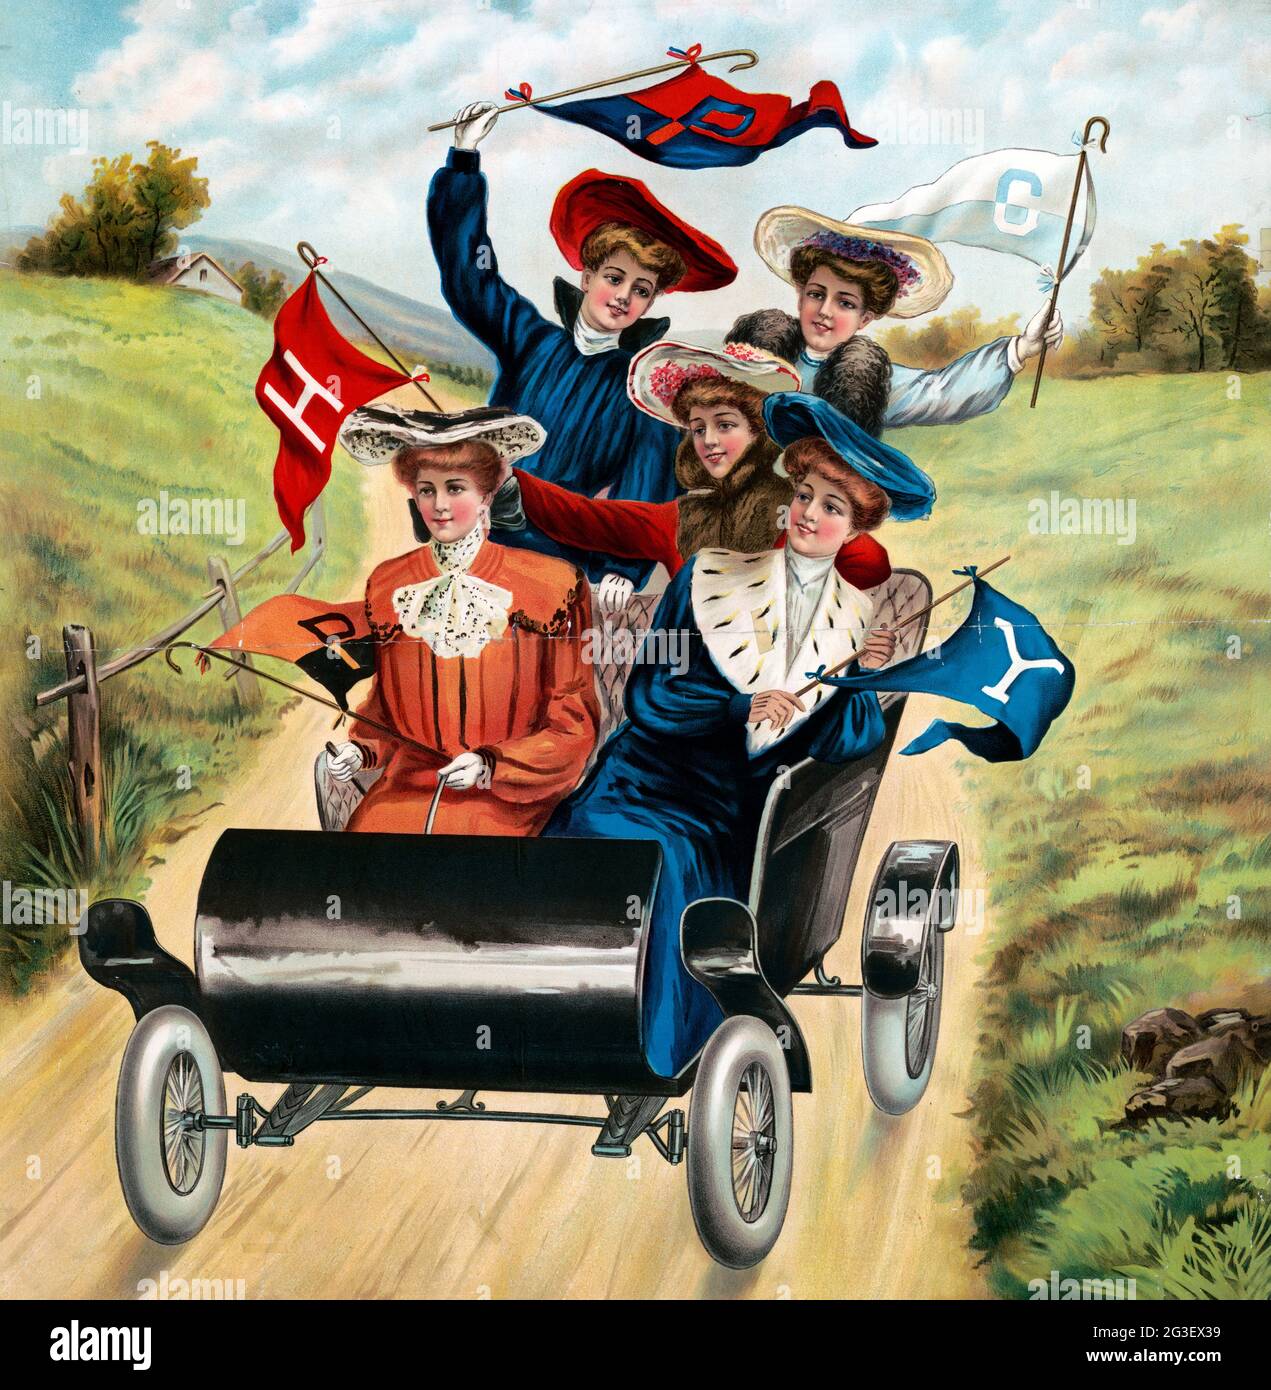 Cinque donne che guidano in una automobile iniziale, ciascuna è vestita modaiamente vestendo cappotti e cappelli, tenendo bandiere. Foto Stock